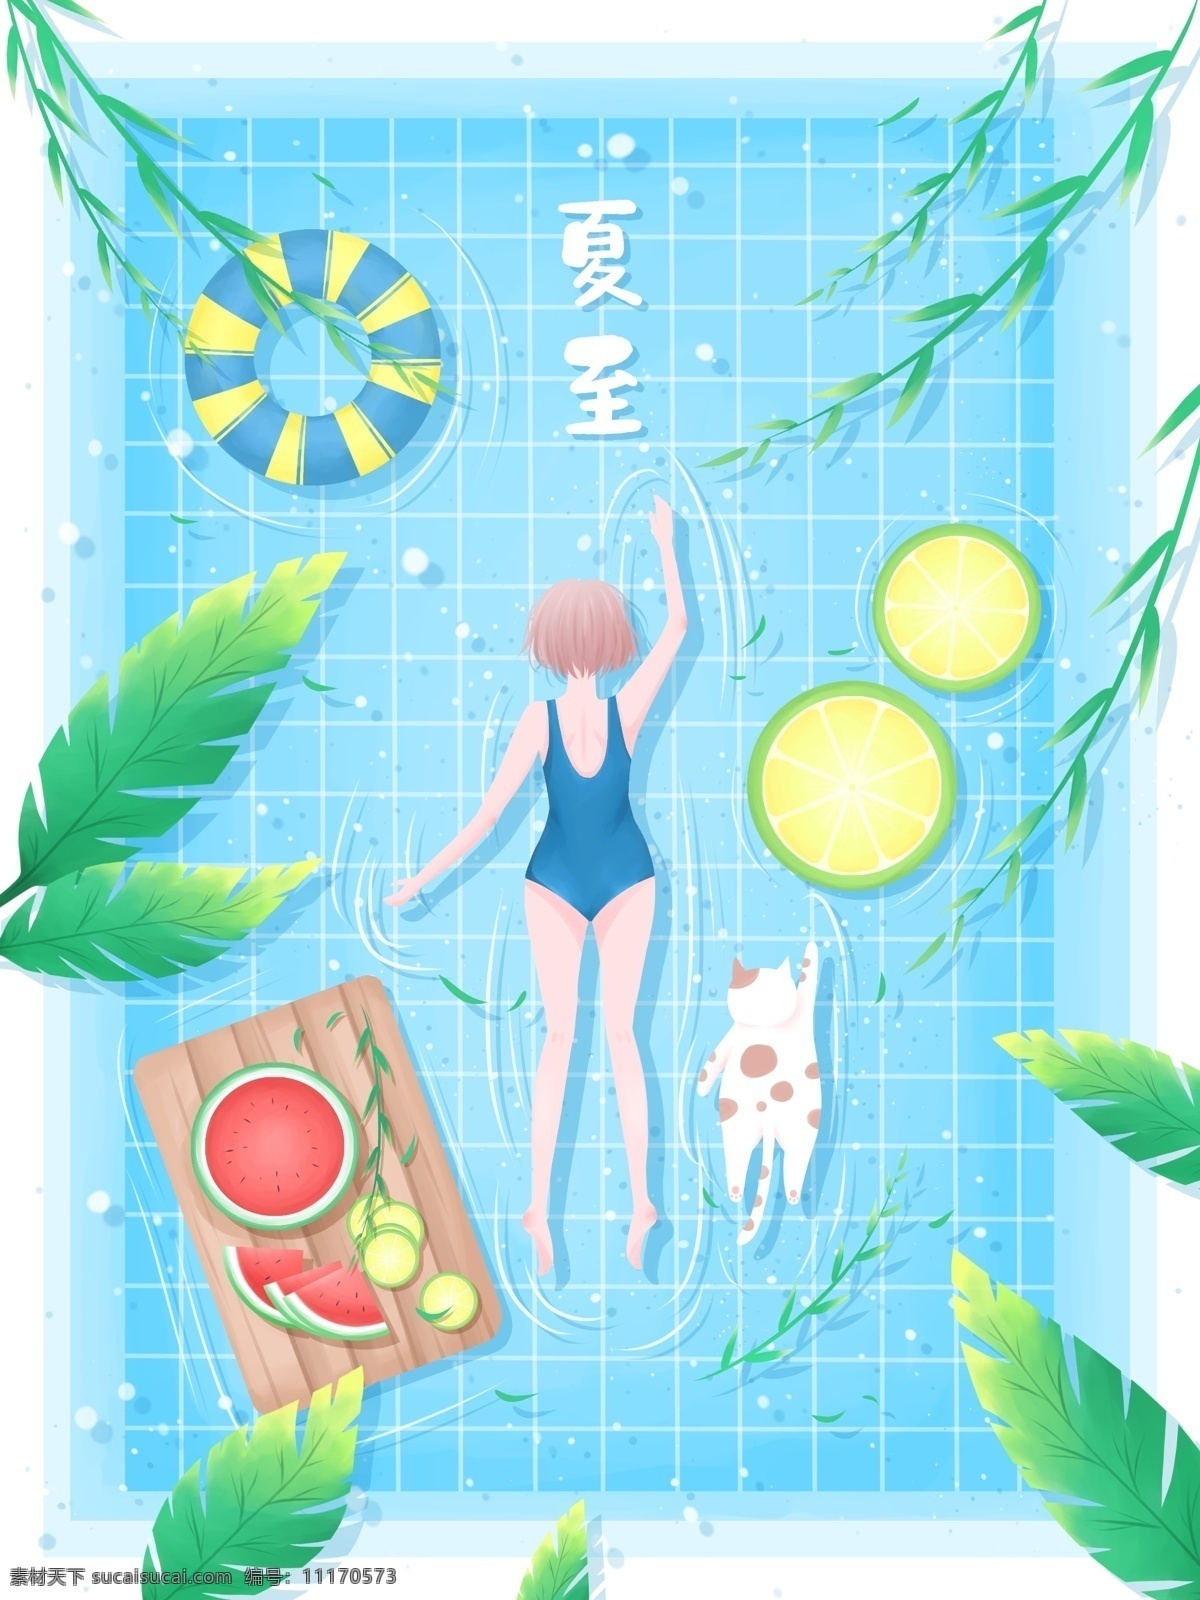 夏至 小 清新 插画 夏天 游泳池 里 游泳 女孩 蓝色 西瓜 柠檬 猫 泳衣 游泳圈 叶子 柳条